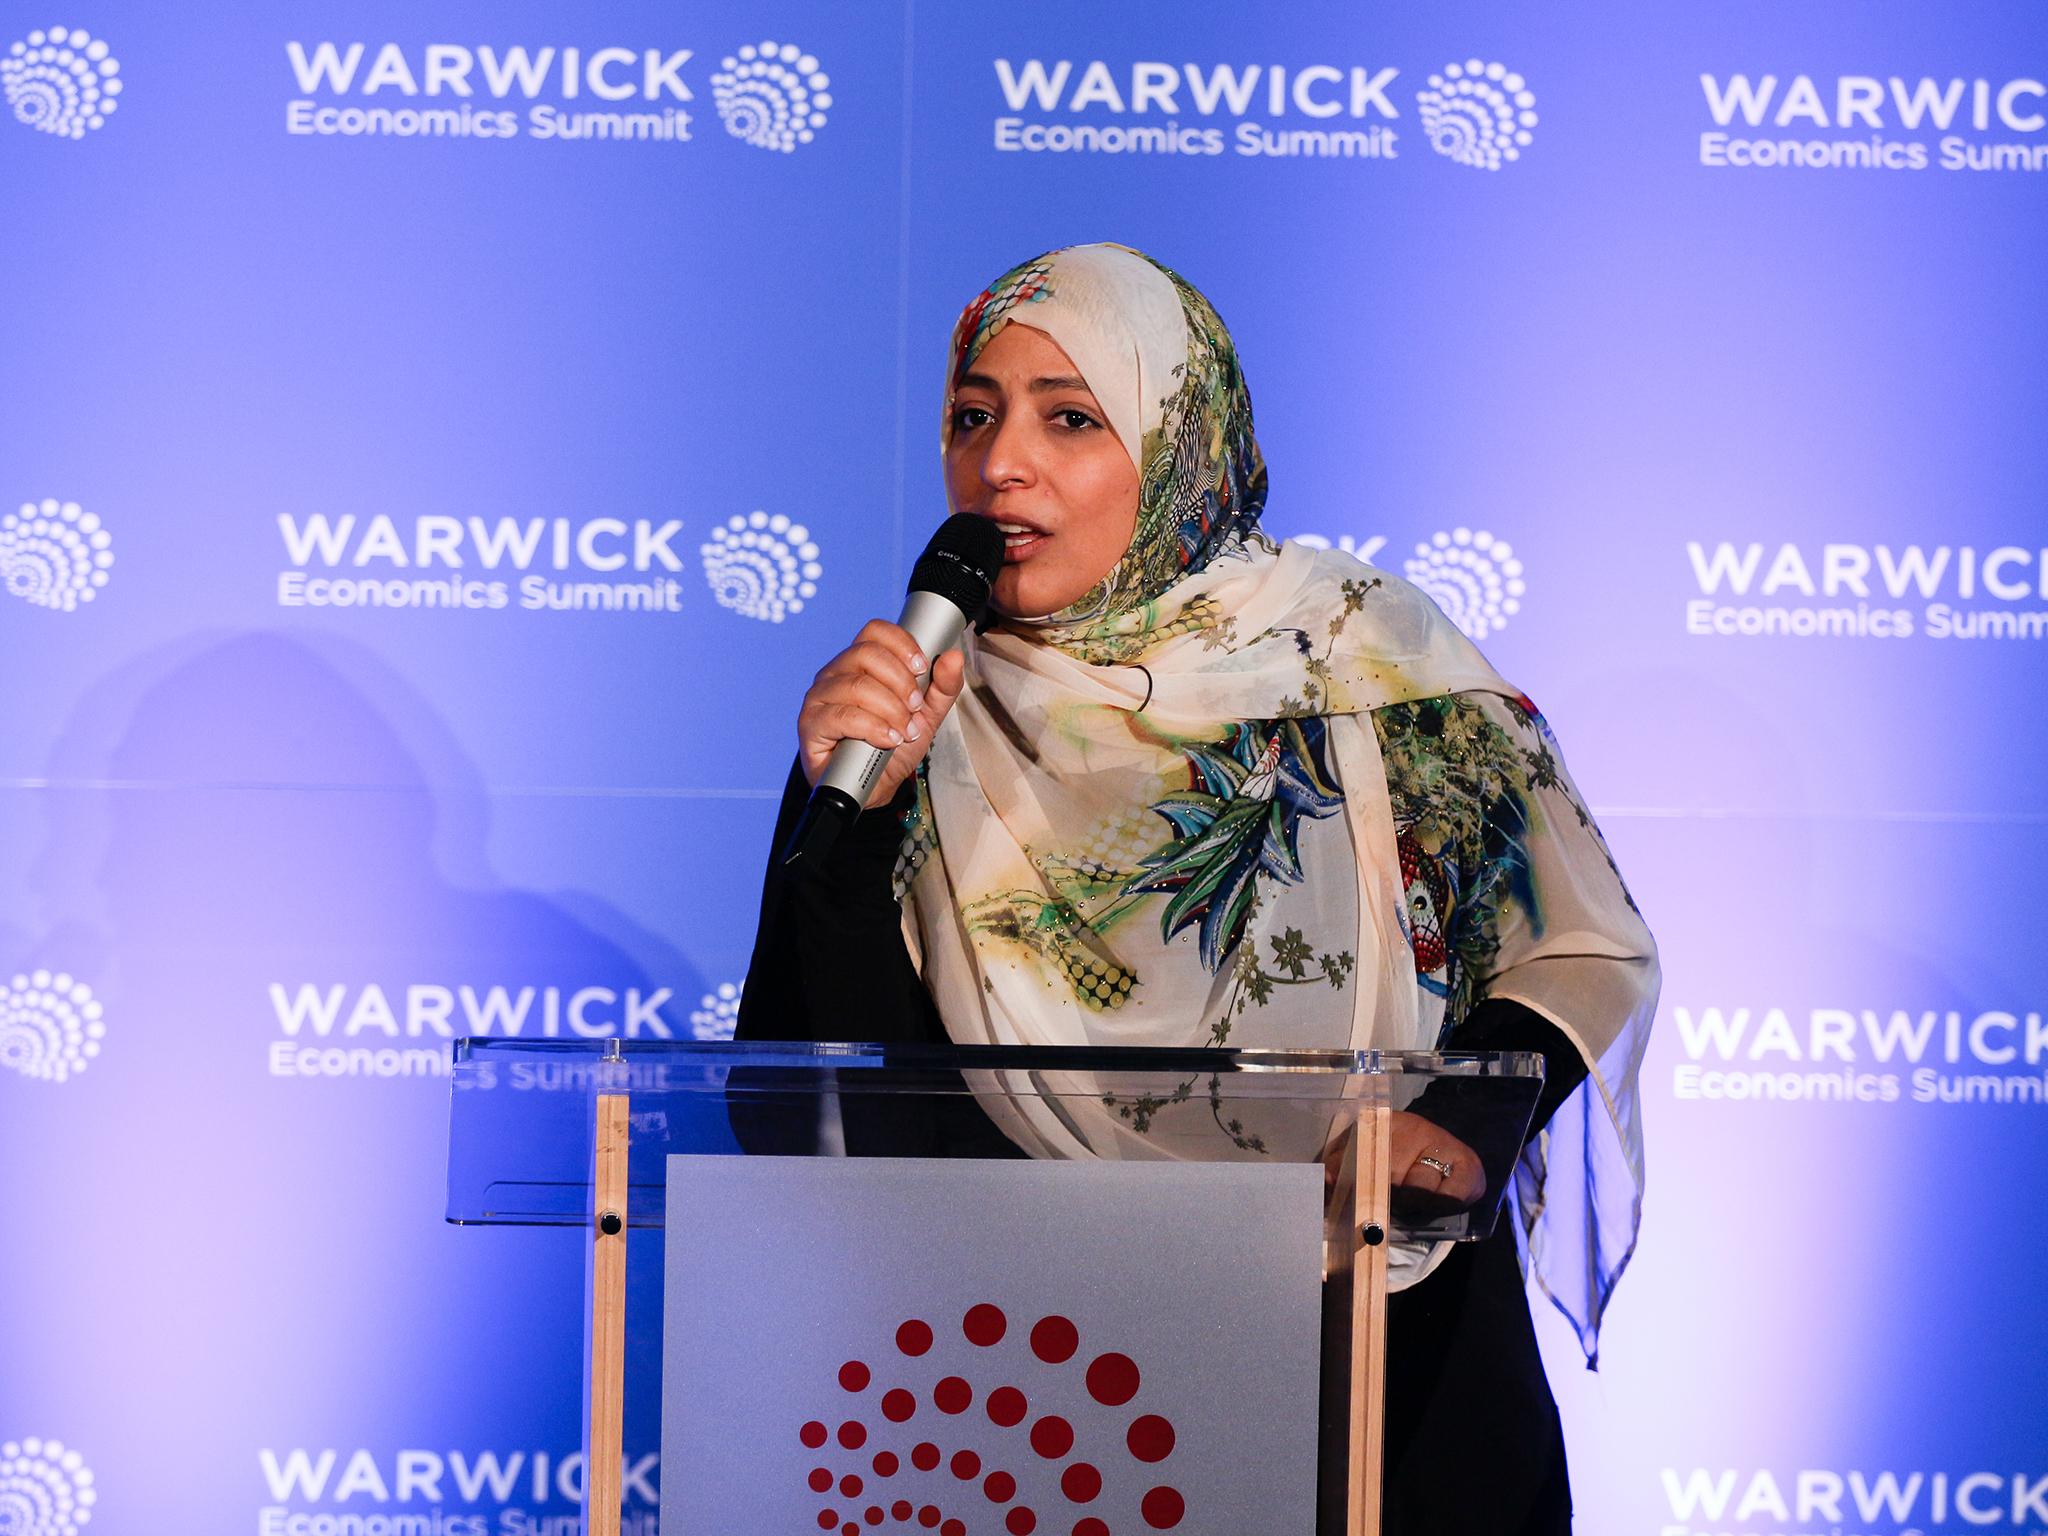 Tawakkol Karman speaking at the Warwick Economics Summit